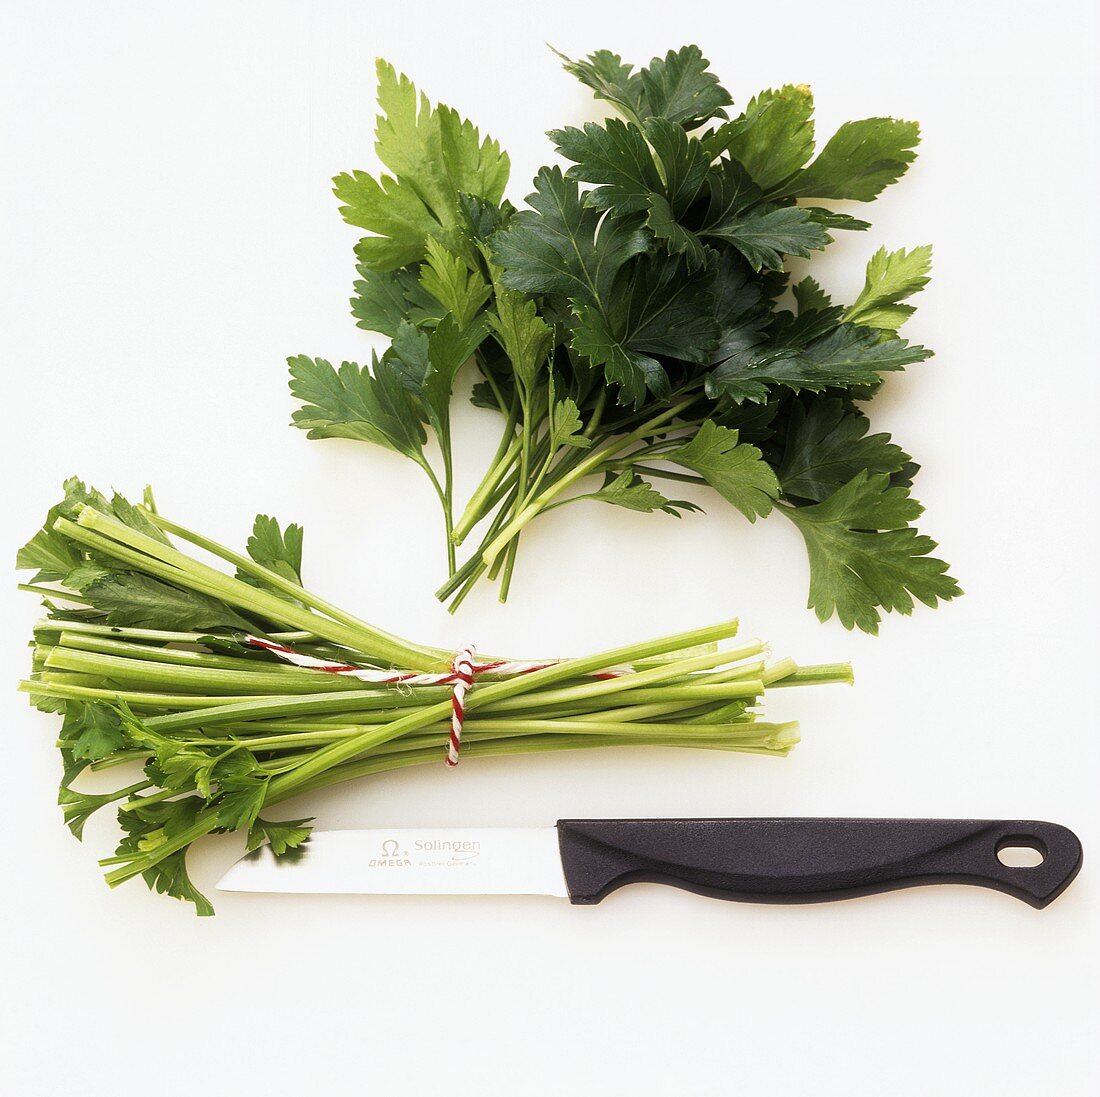 Cutting off parsley stalks